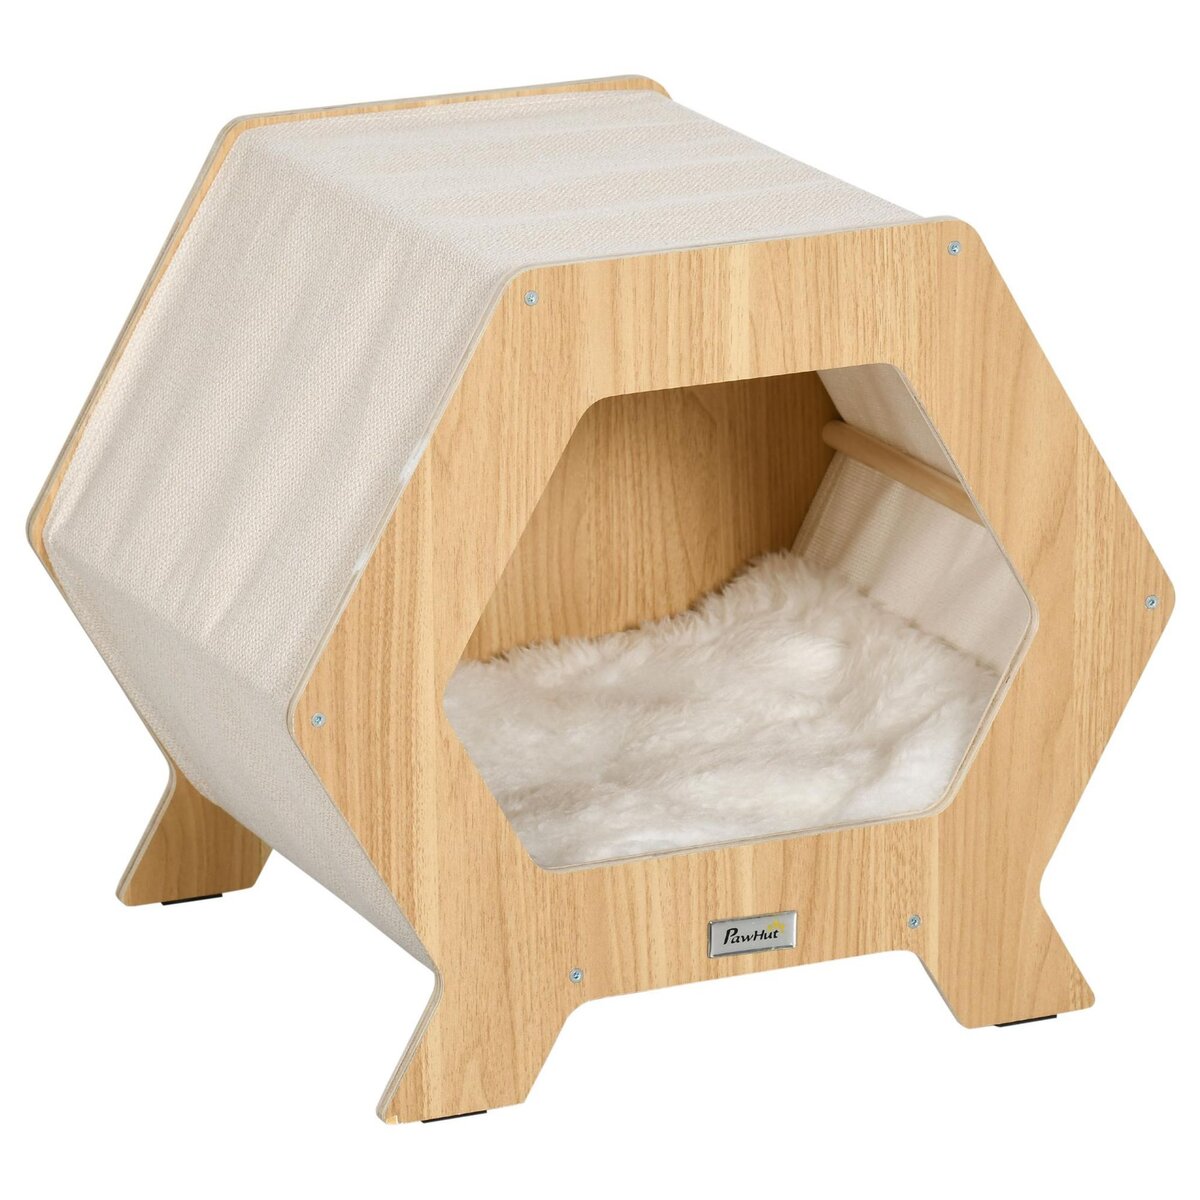 Maison pour chat design hexagonal - niche chat panier chat - coussin  fourrure amovible, grattoir jute naturelle - contreplaqué aspect bois clair